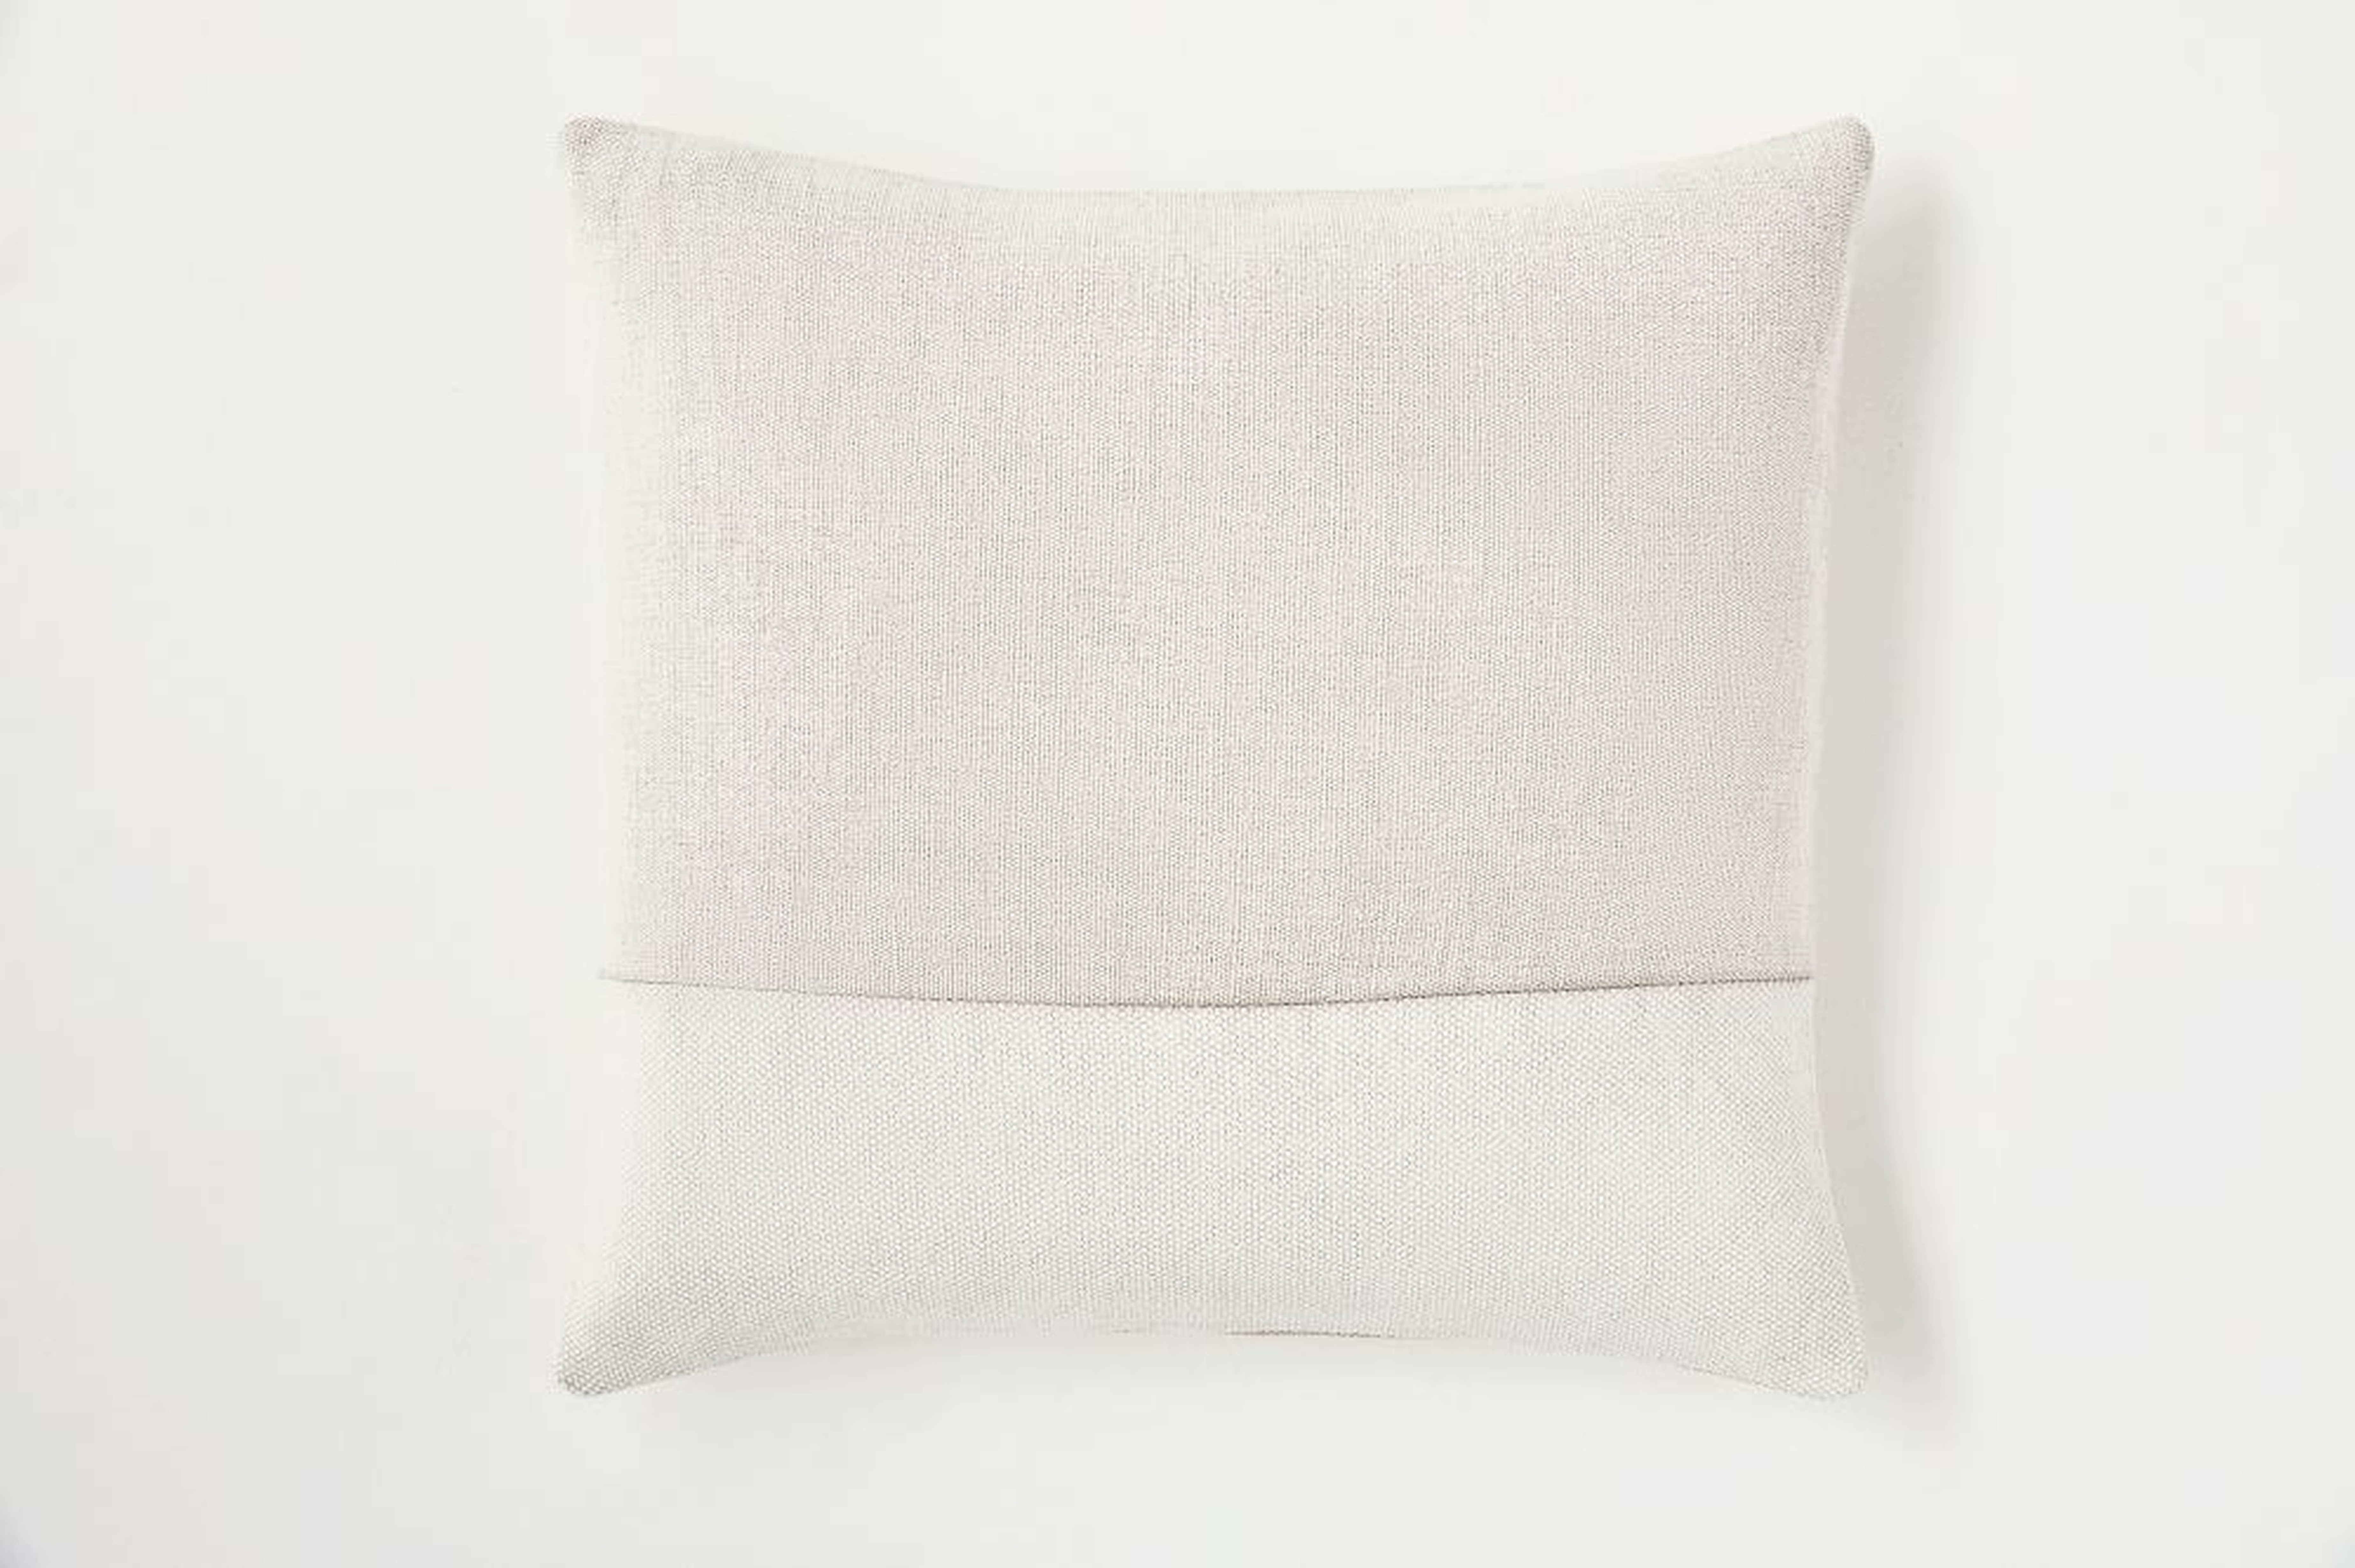 Cotton Canvas Pillow Cover, 24"x24", White - West Elm